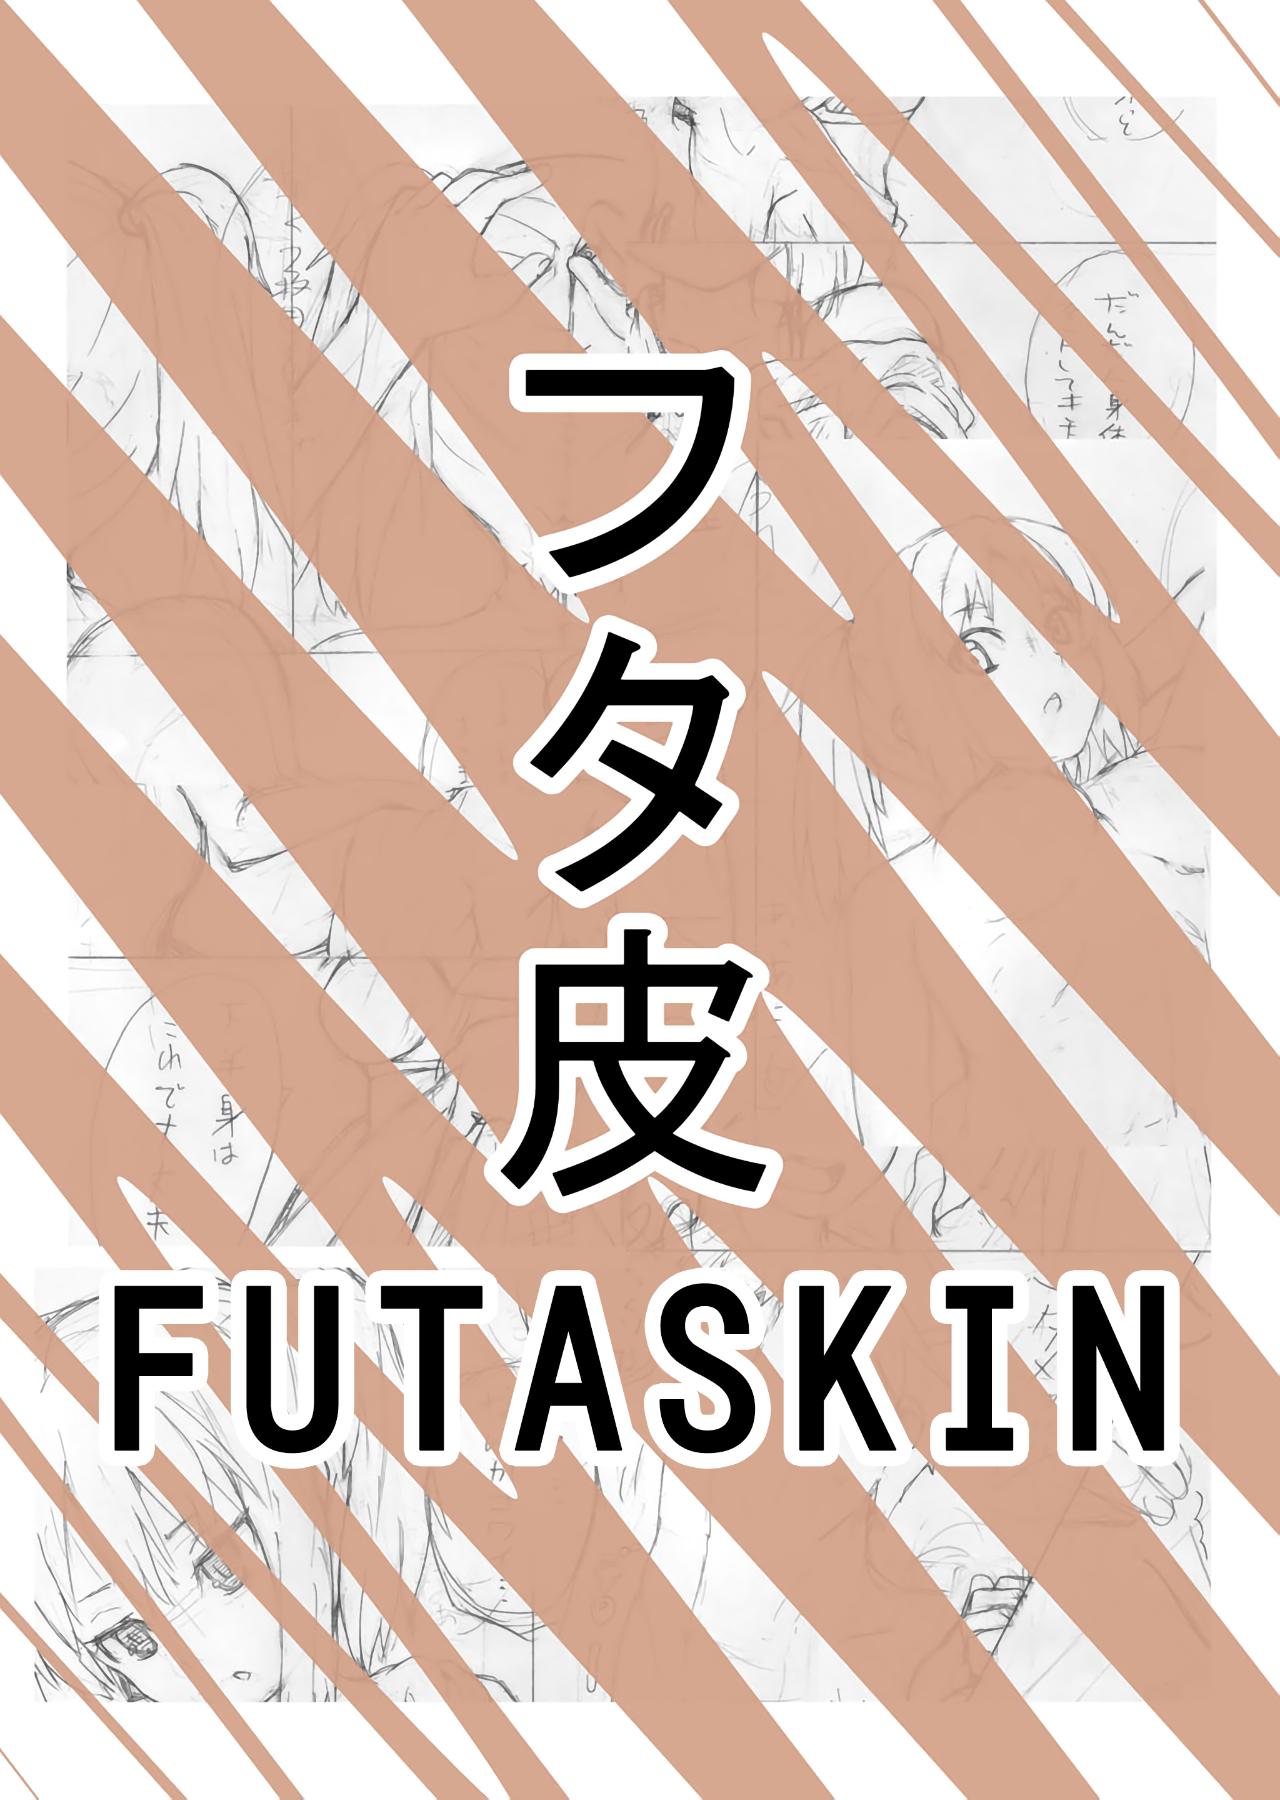 Futaskin  by Miyuki 0